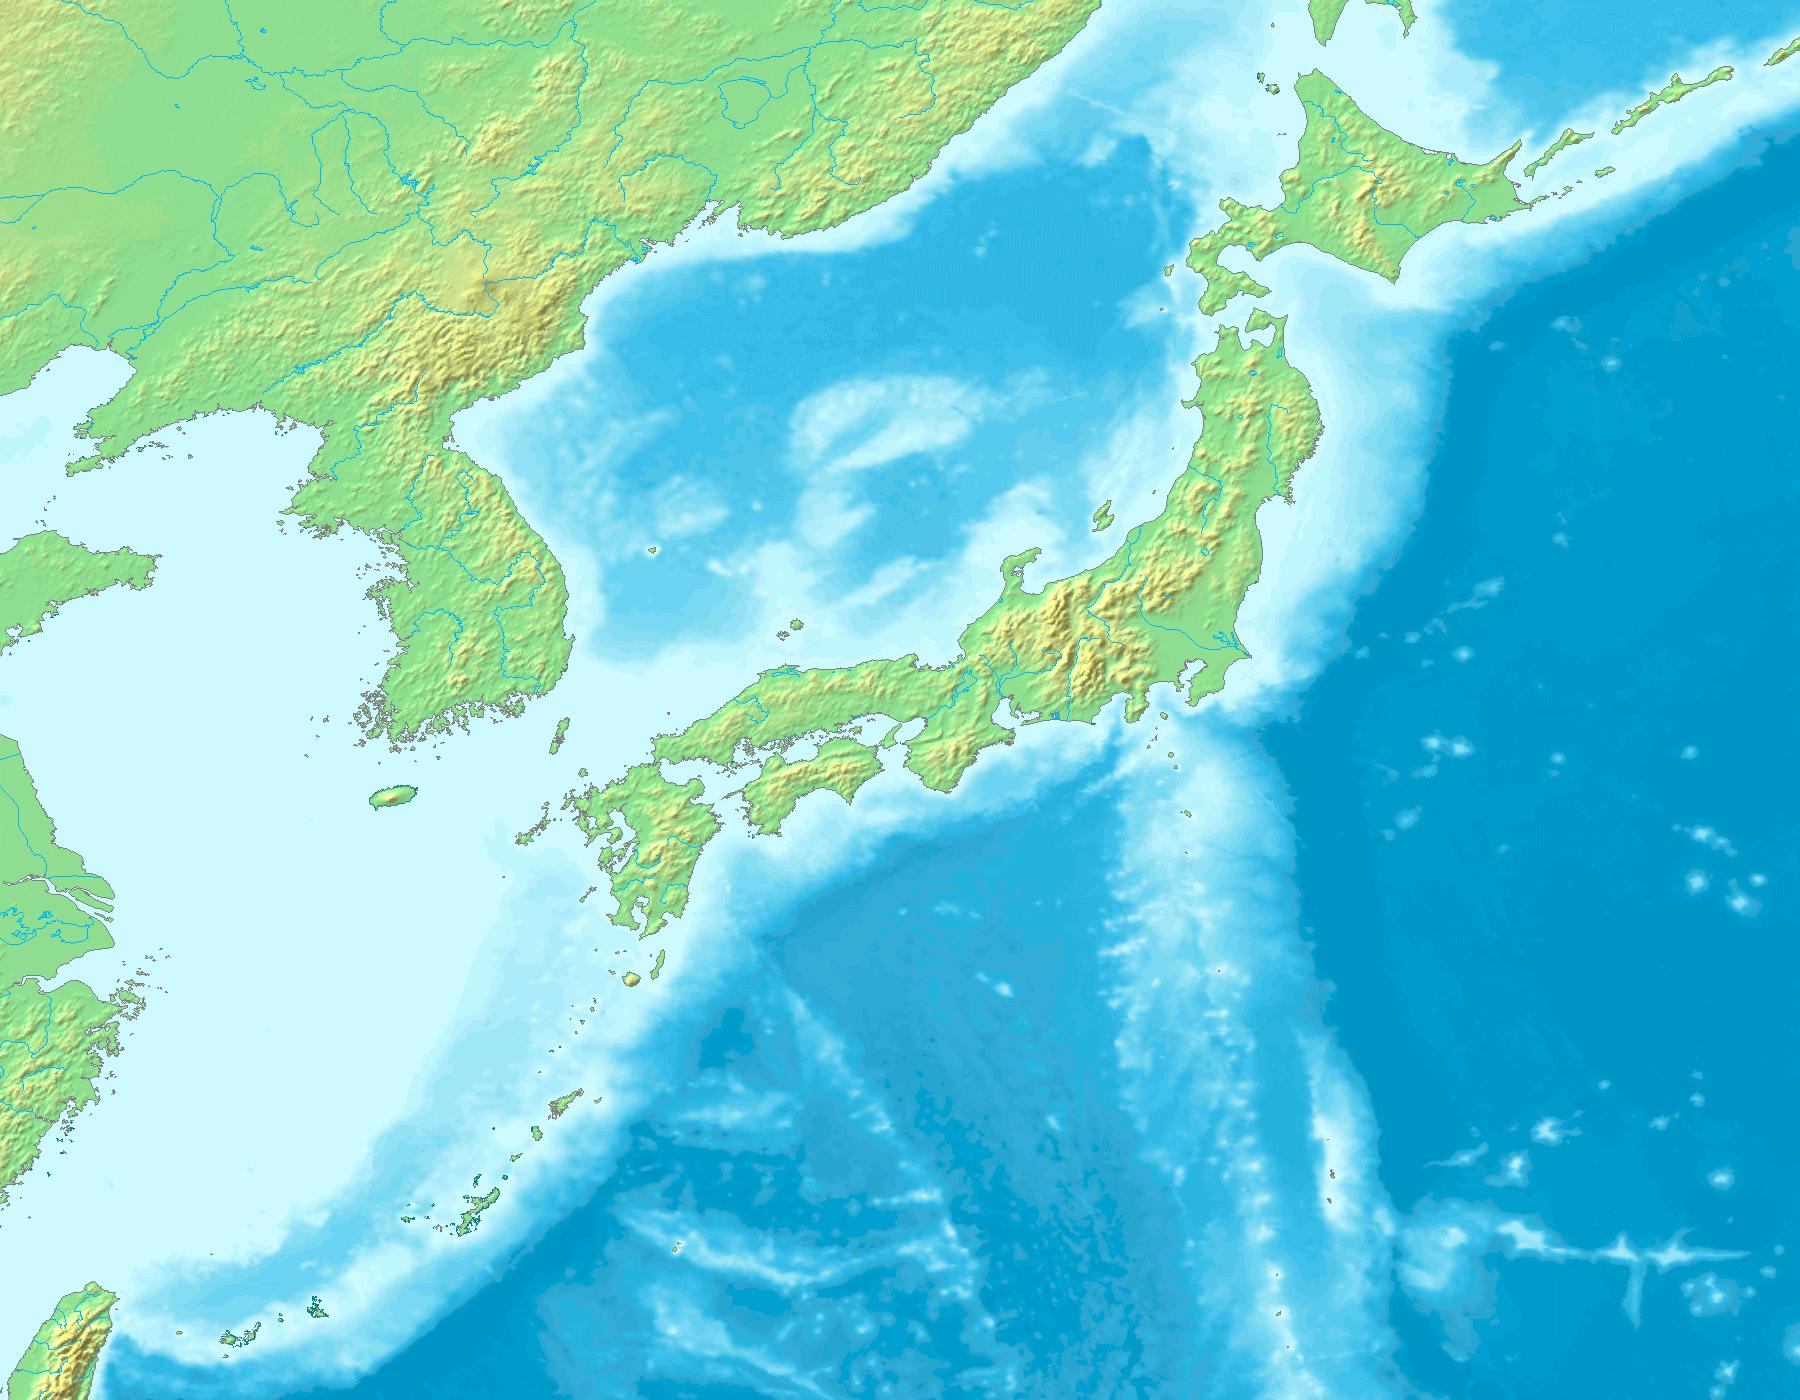 kanto plain japan map